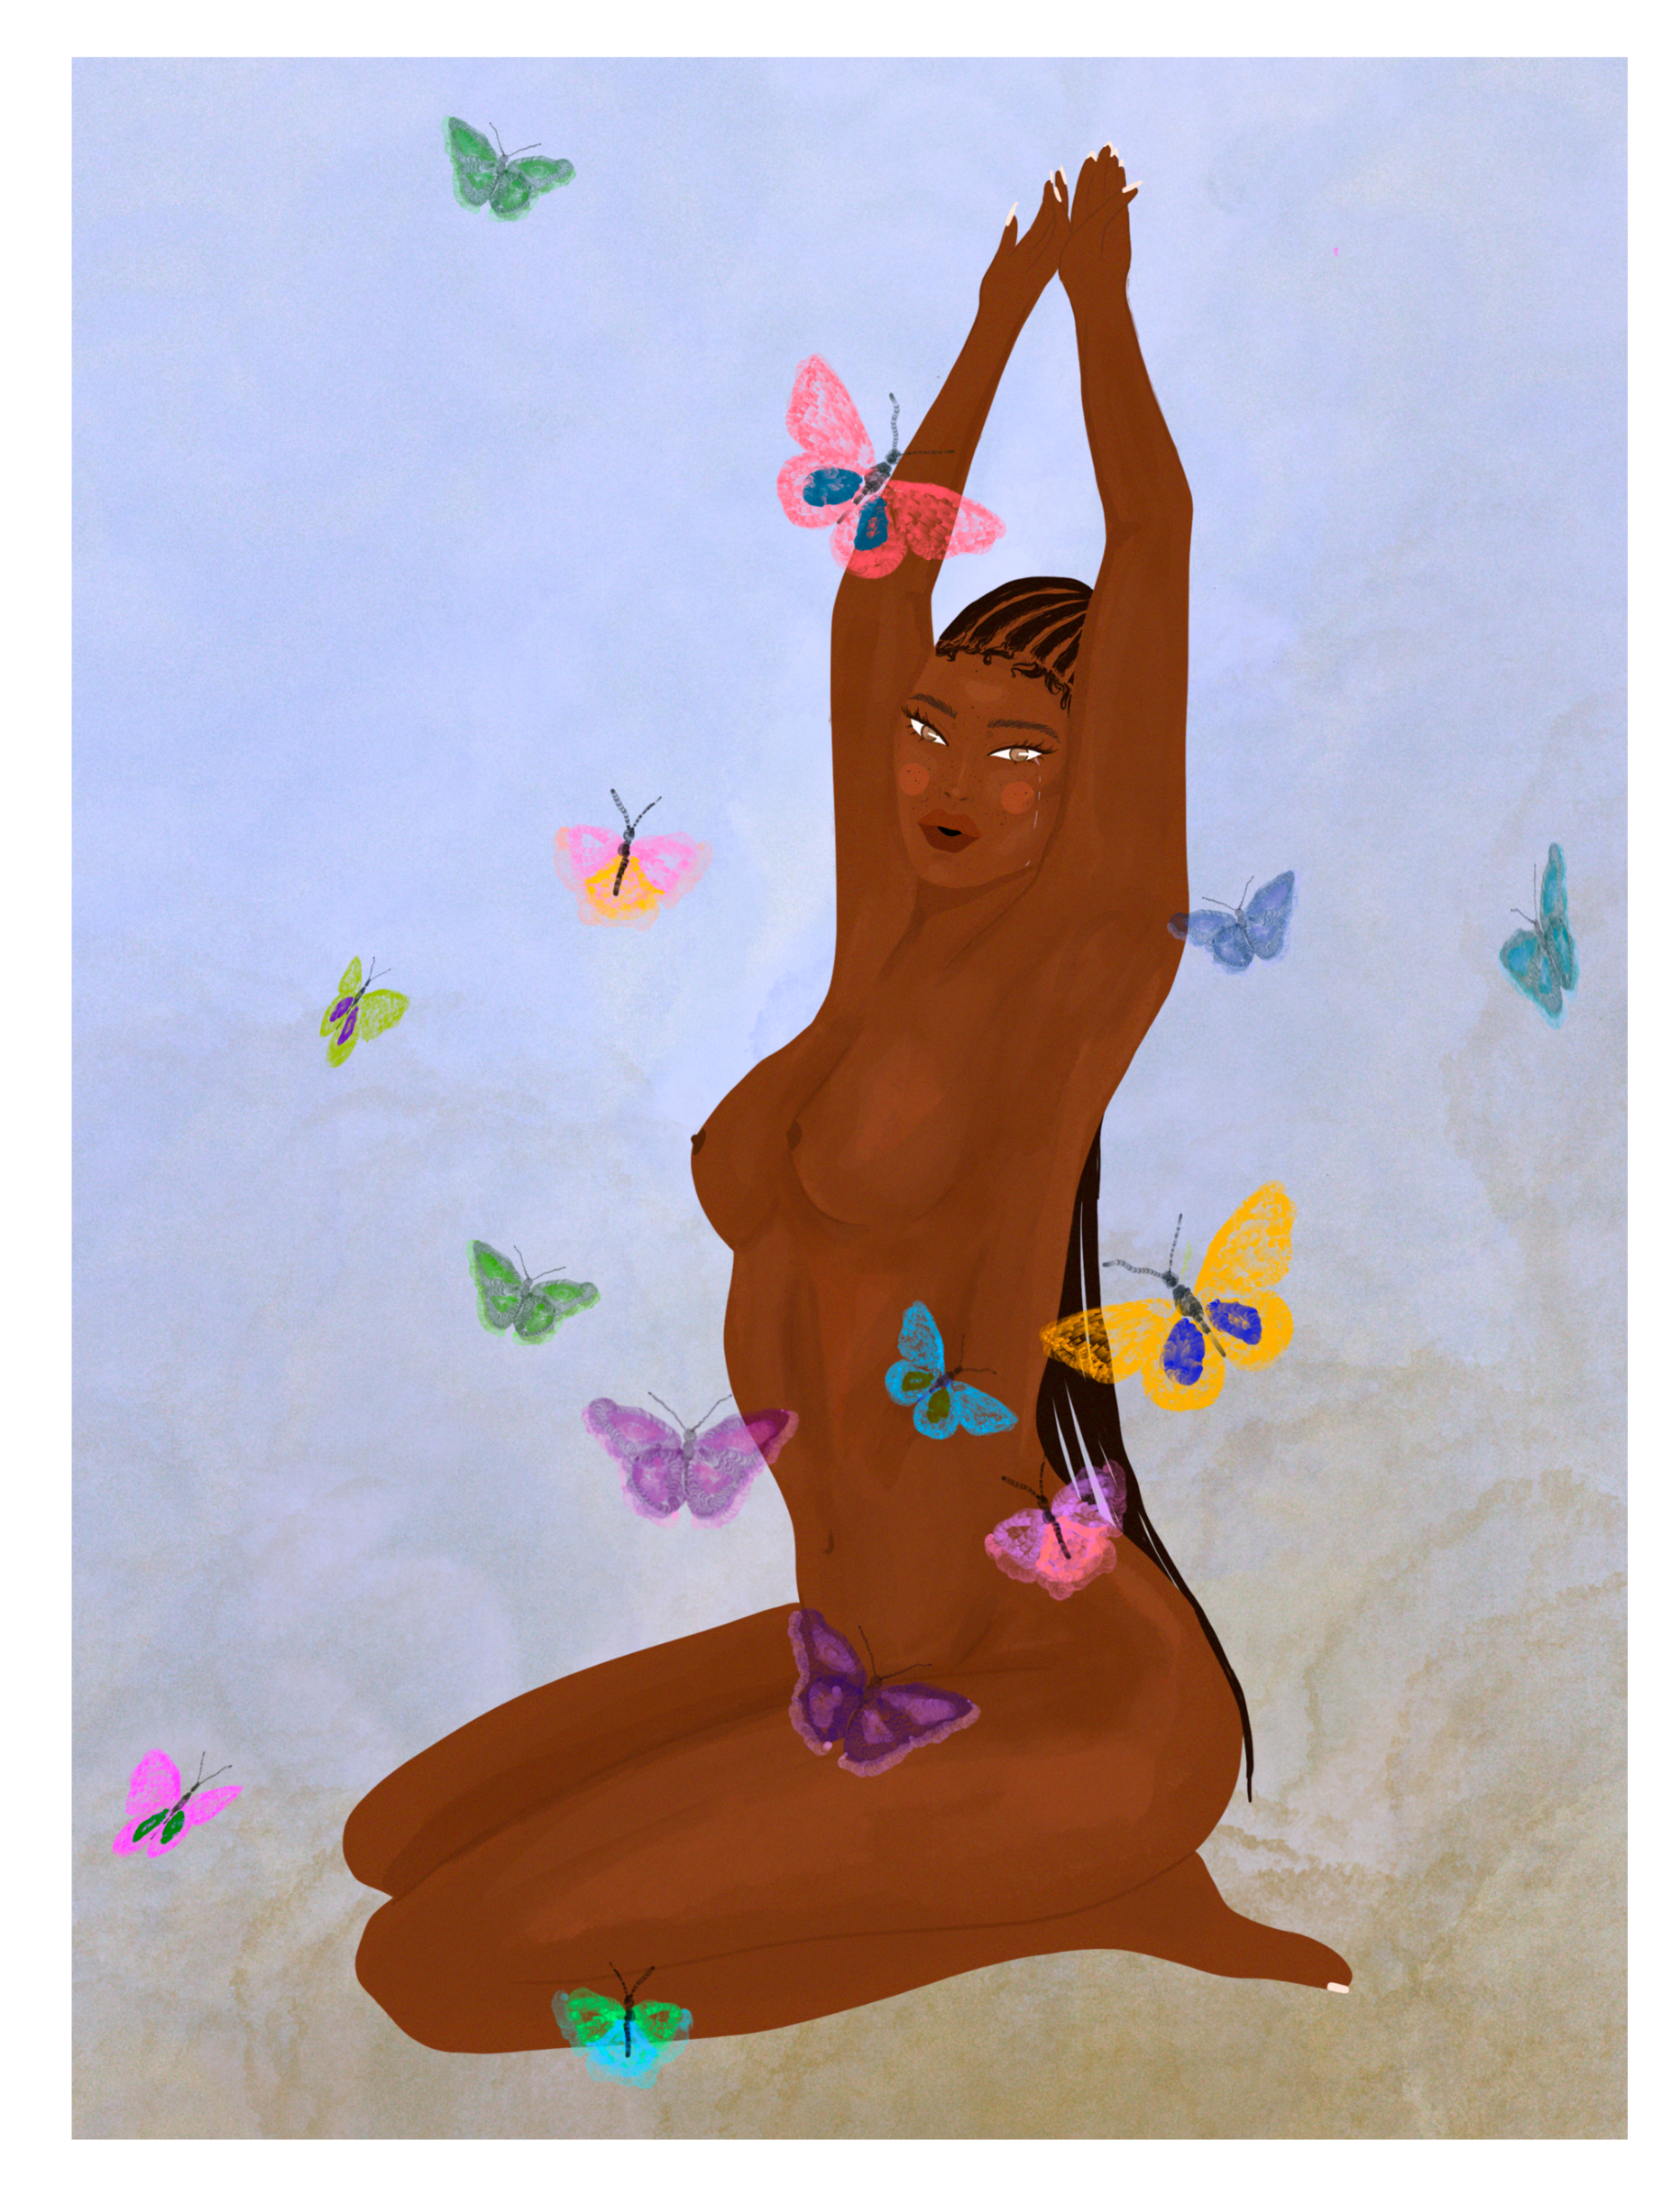 I still get butterflies - ART PRINT